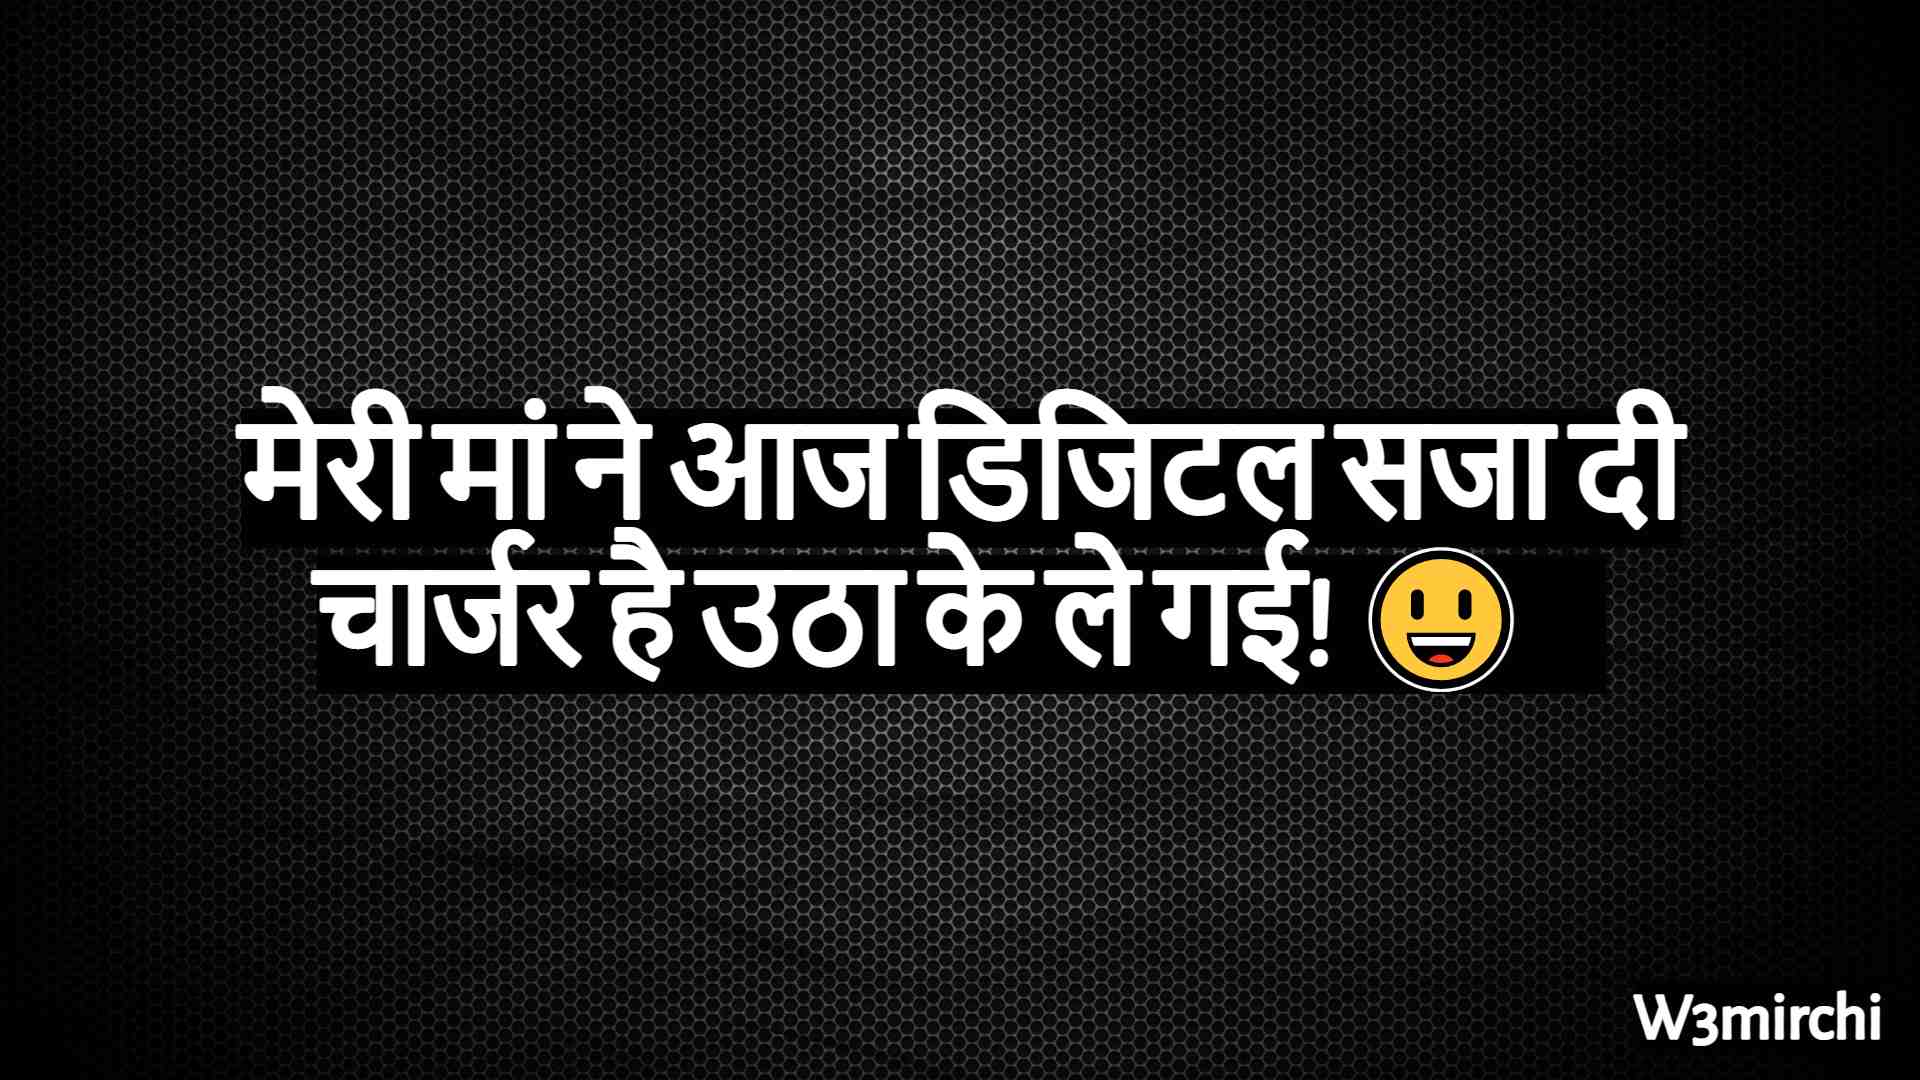 Family Jokes in Hindi